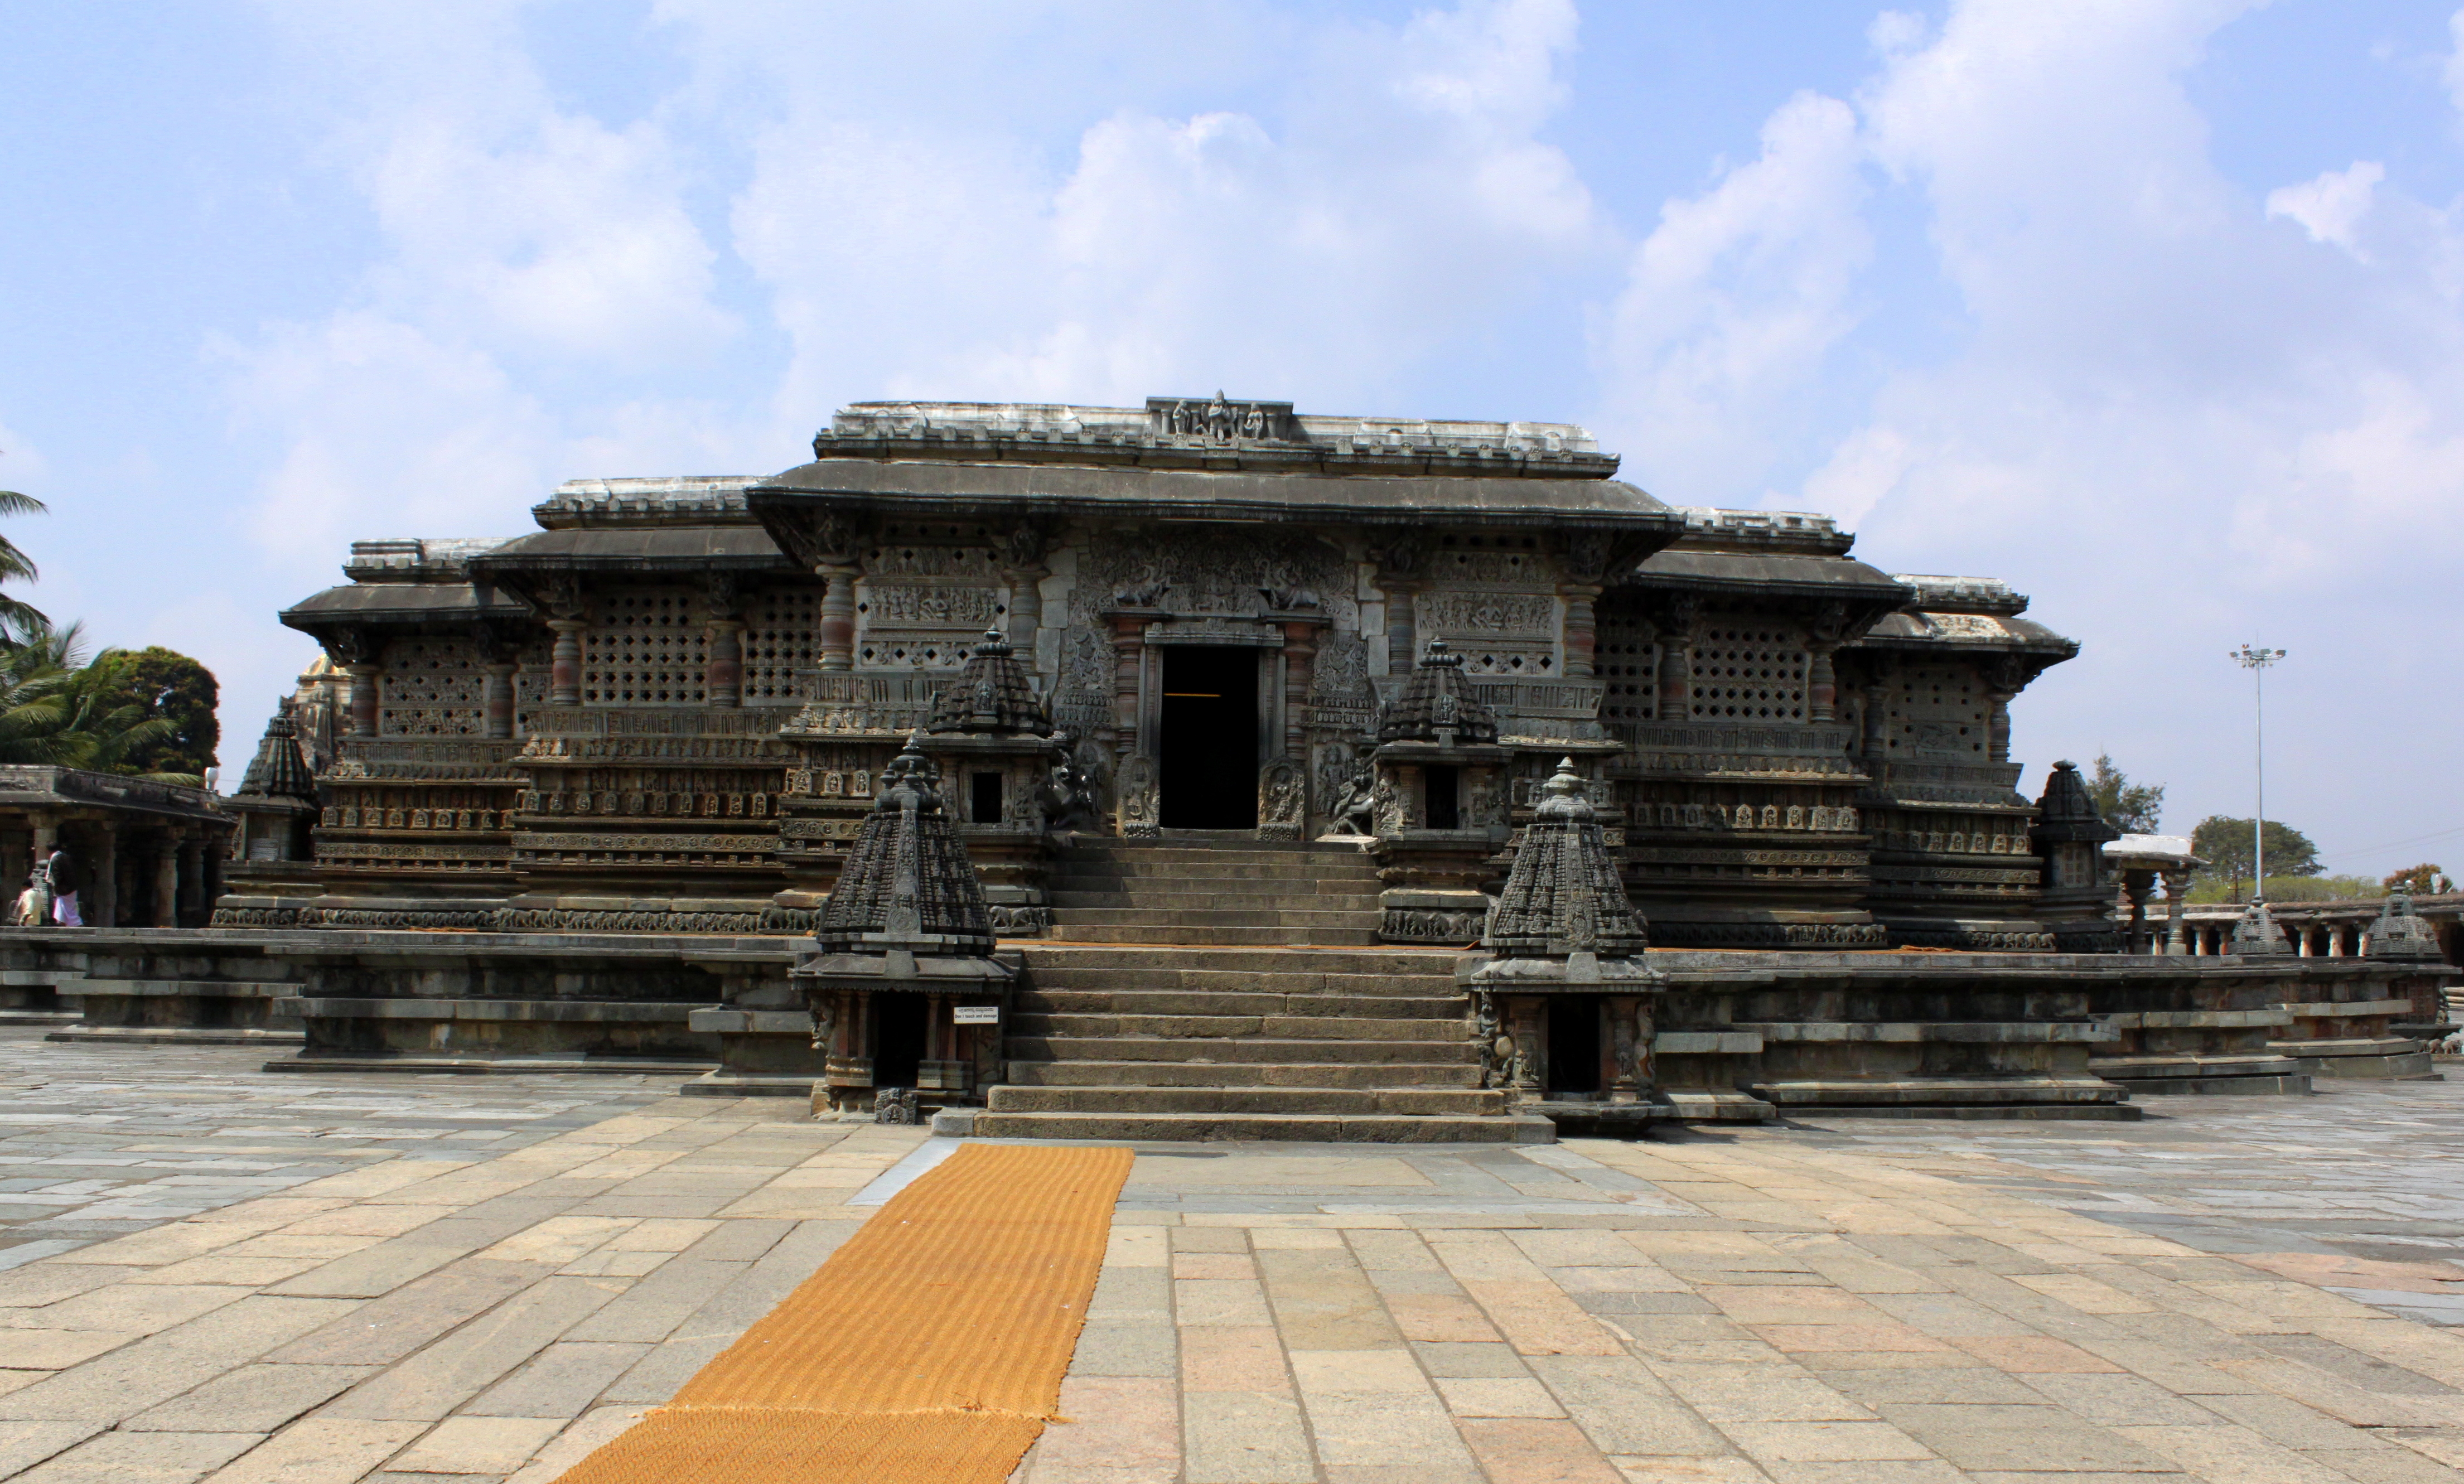 File:ChennaKeshava Temple, Belur.JPG - Wikimedia Commons